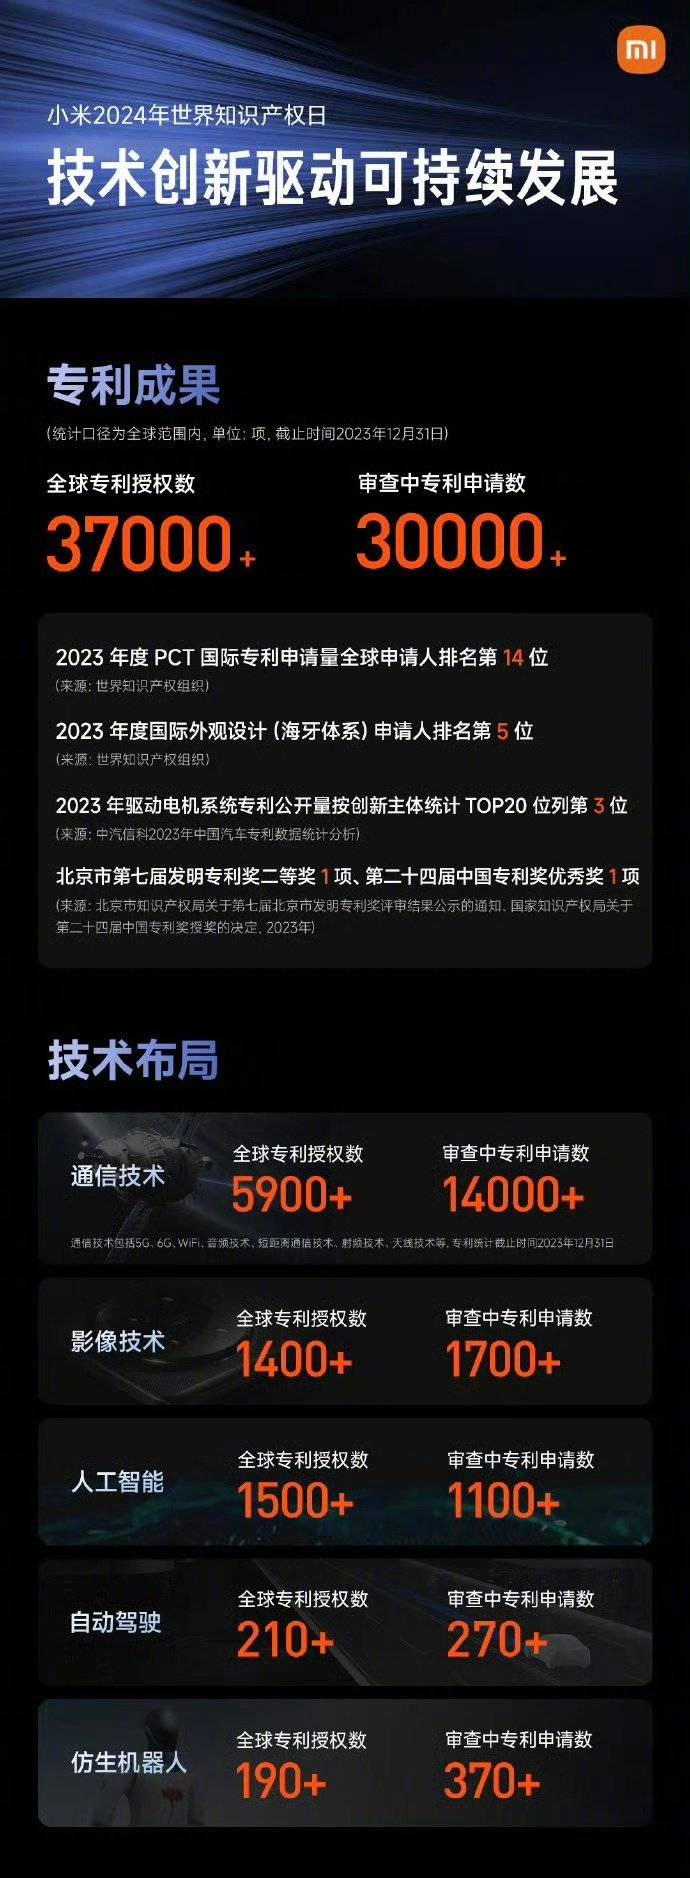 Morning Post |. Apple intensiviert Verhandlungen mit Führungskräften von OpenAI/Xiaomi und widerlegt Gerüchte, dass Lei Jun von Li Xiang im Auto eingesperrt wurde/WeChat-Dokumente können innerhalb von 3 Stunden zurückgezogen werden - f837b742 3e63 43f7 ac8b acb5972bf991